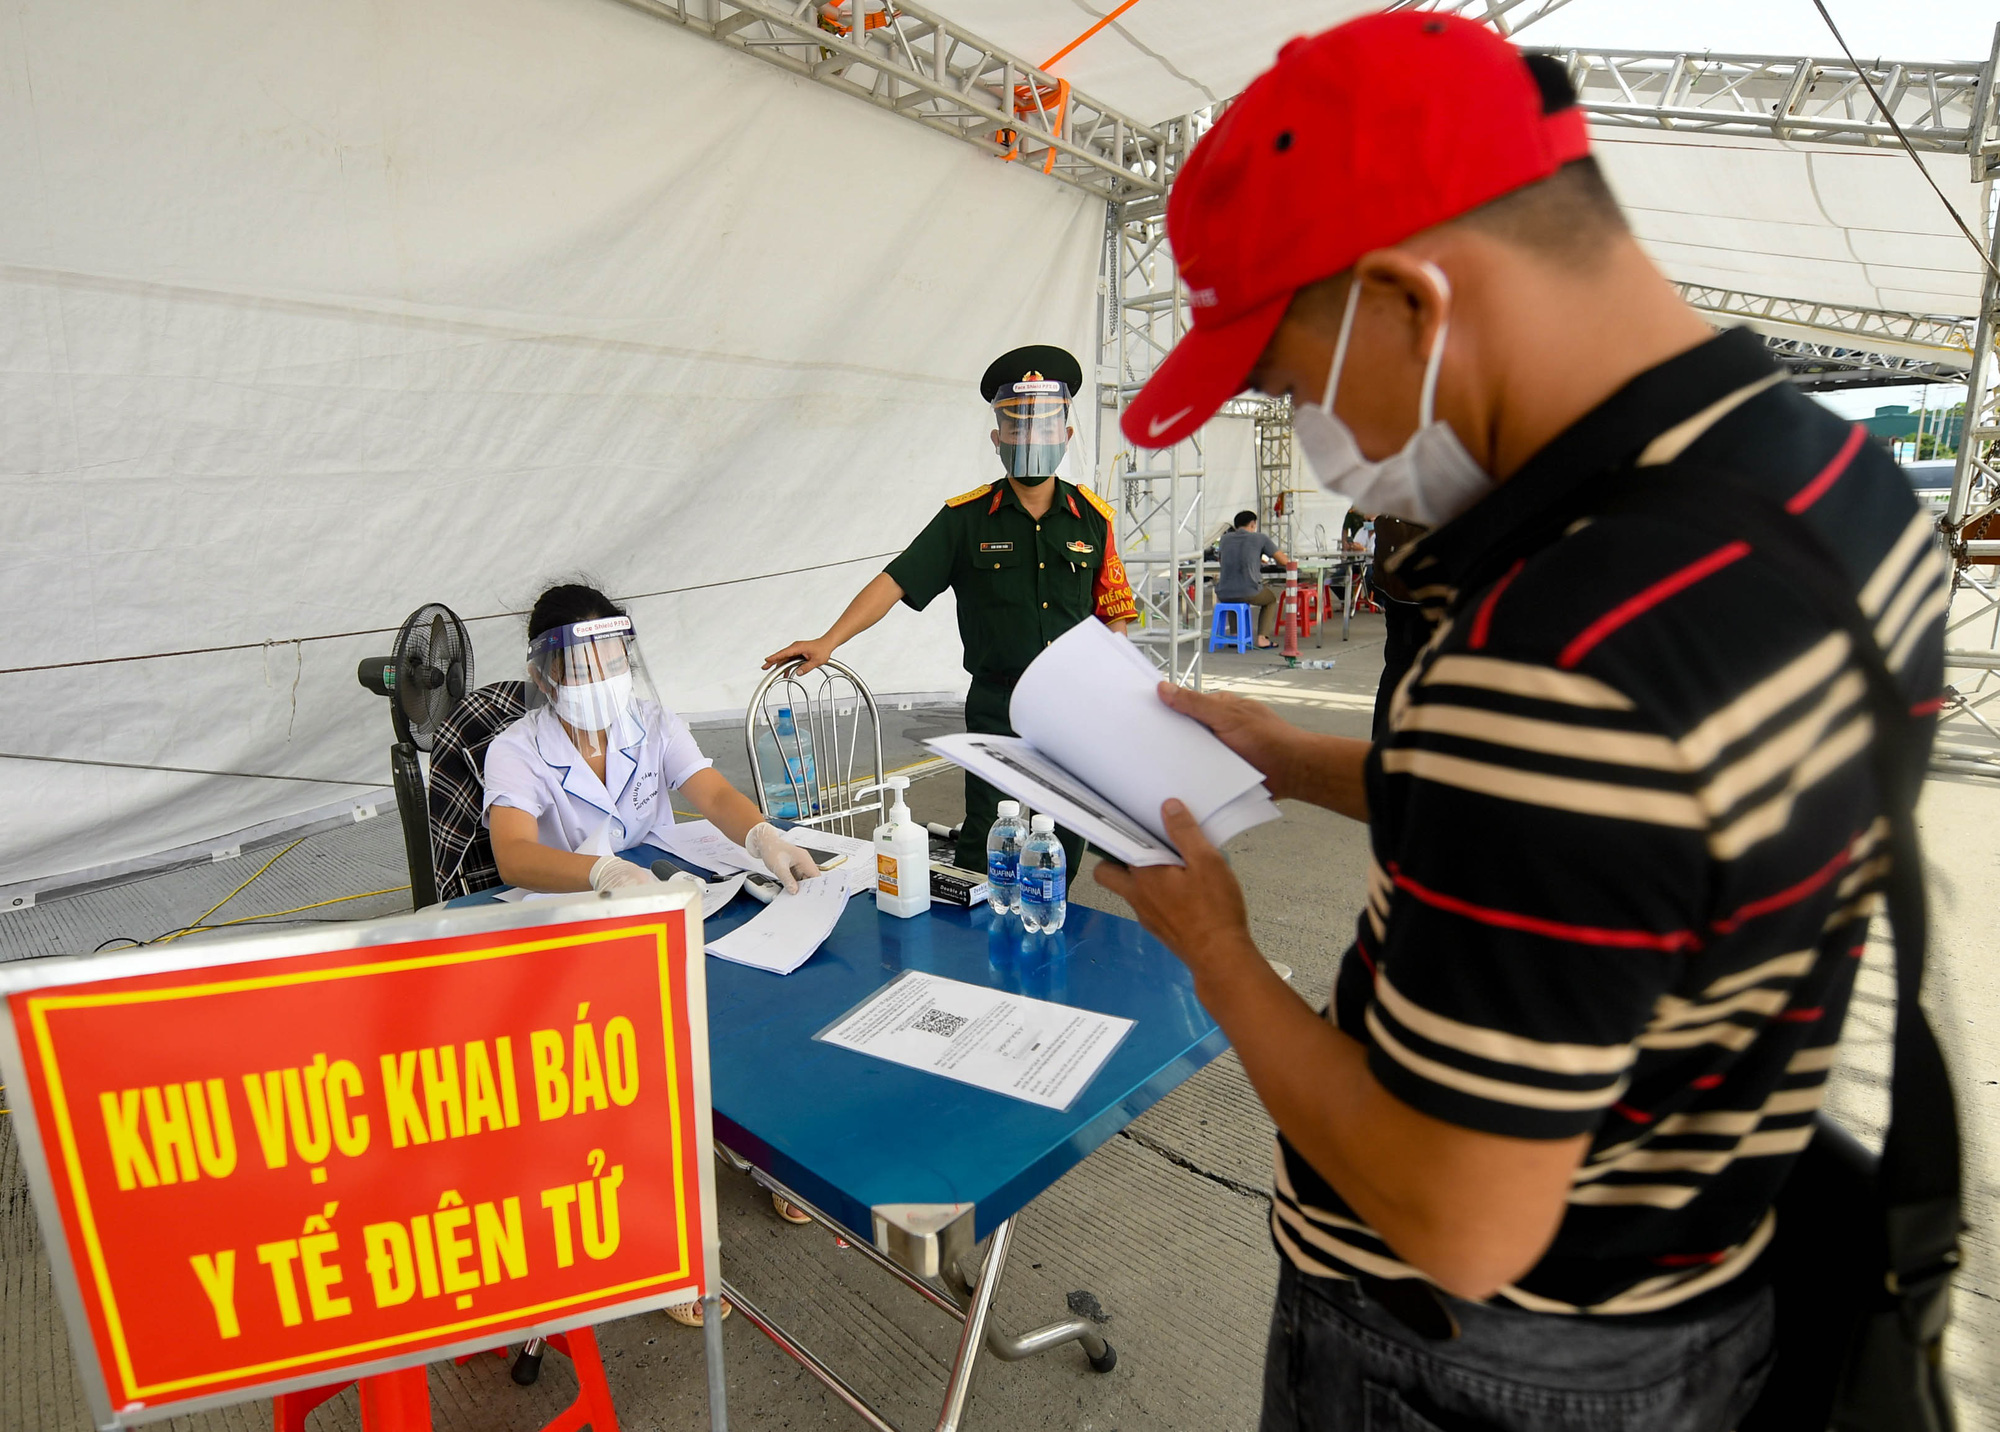 Việt Nam chính thức dừng khai báo y tế nội địa - Ảnh 1.